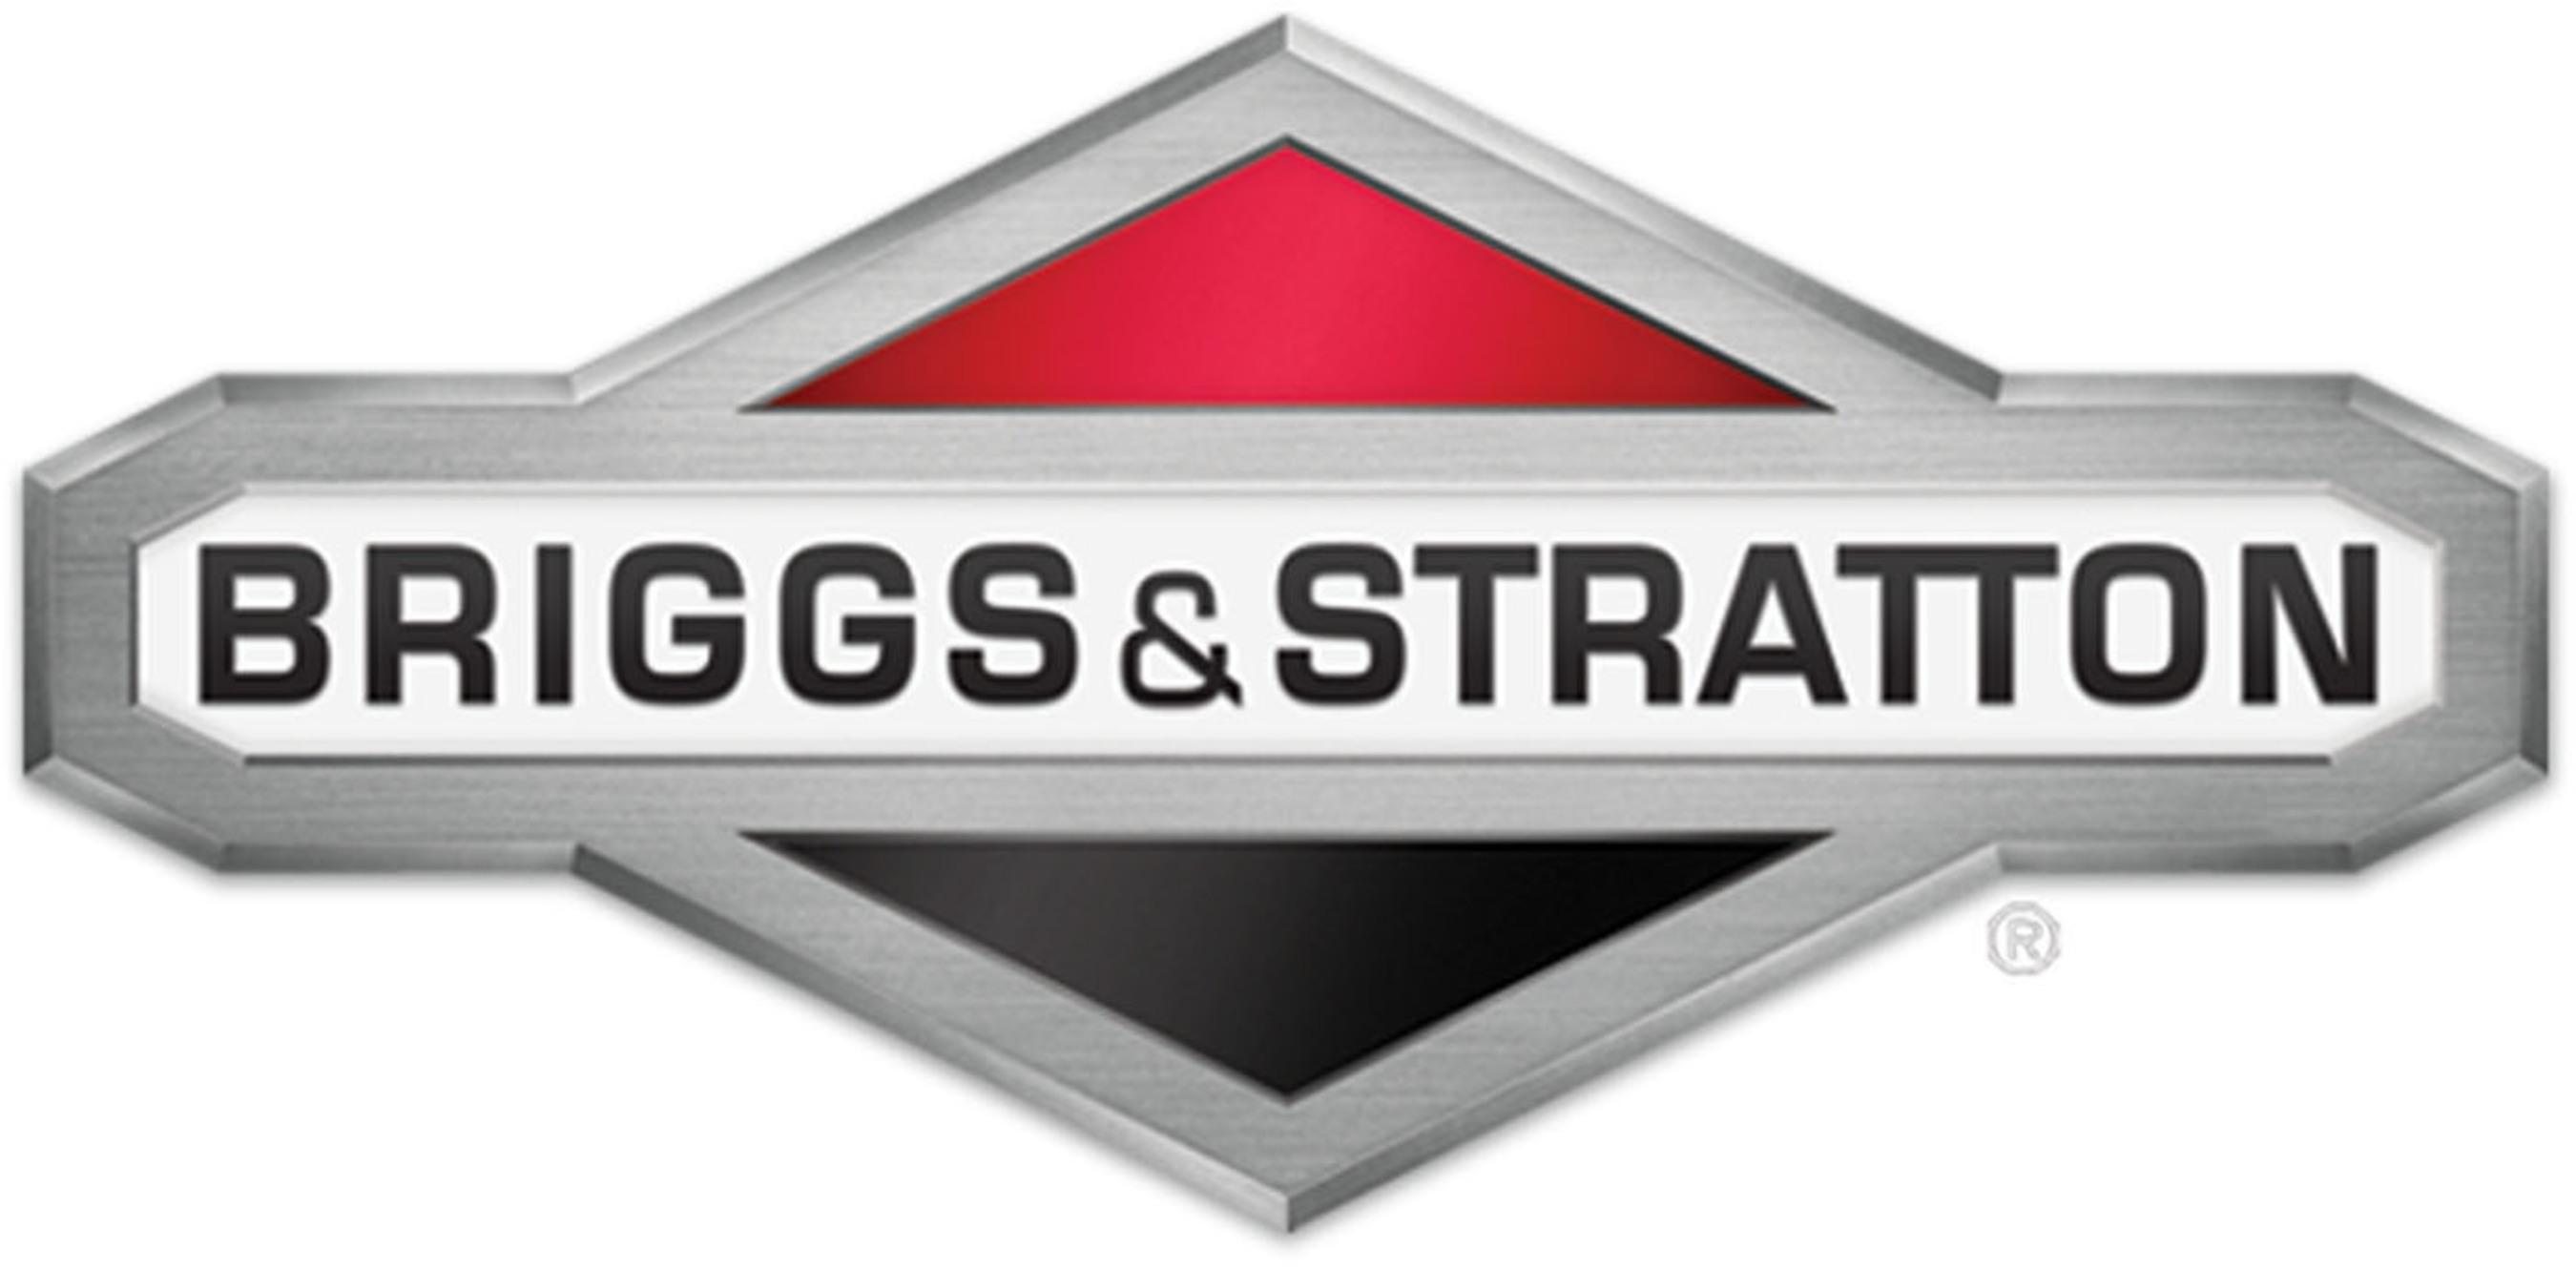 Briggs & Stratton Logo. Portable Generators Ready for Winter